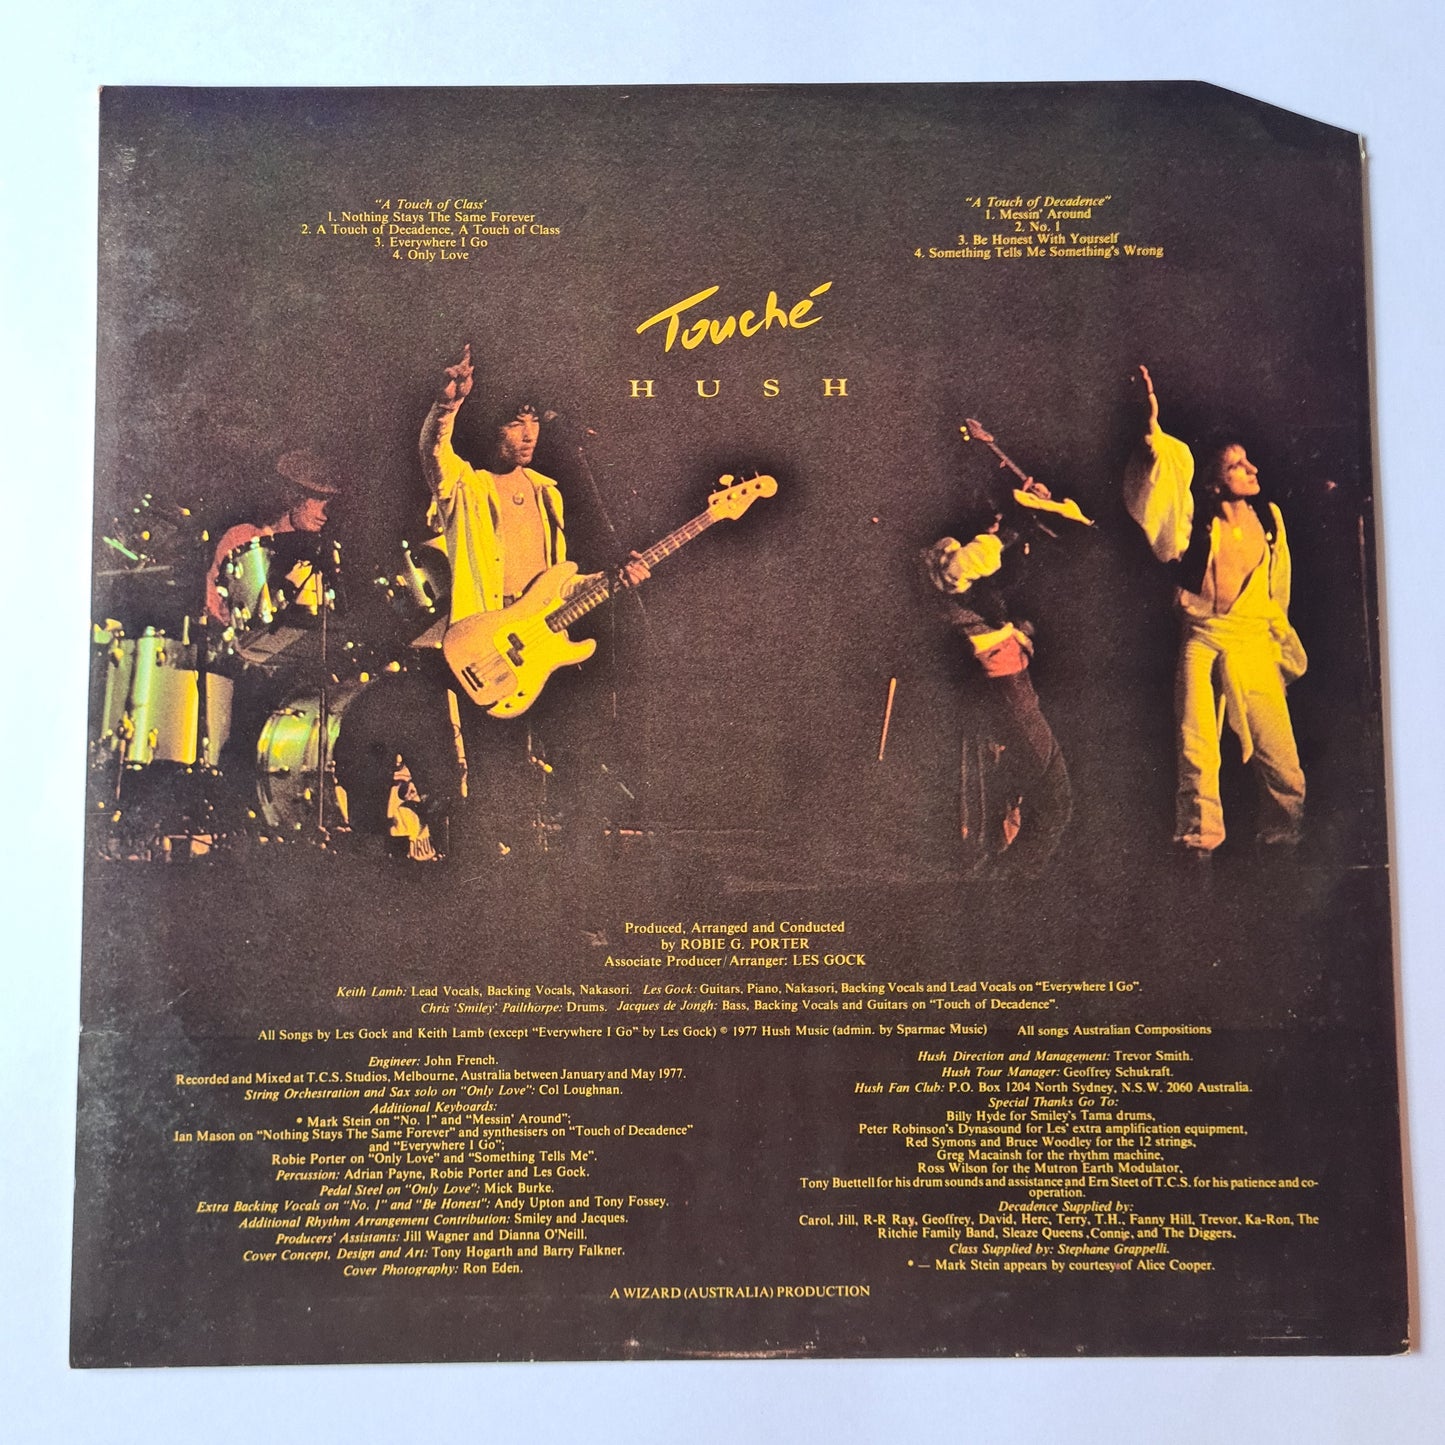 Hush – Touche' -1977 - Vinyl Record